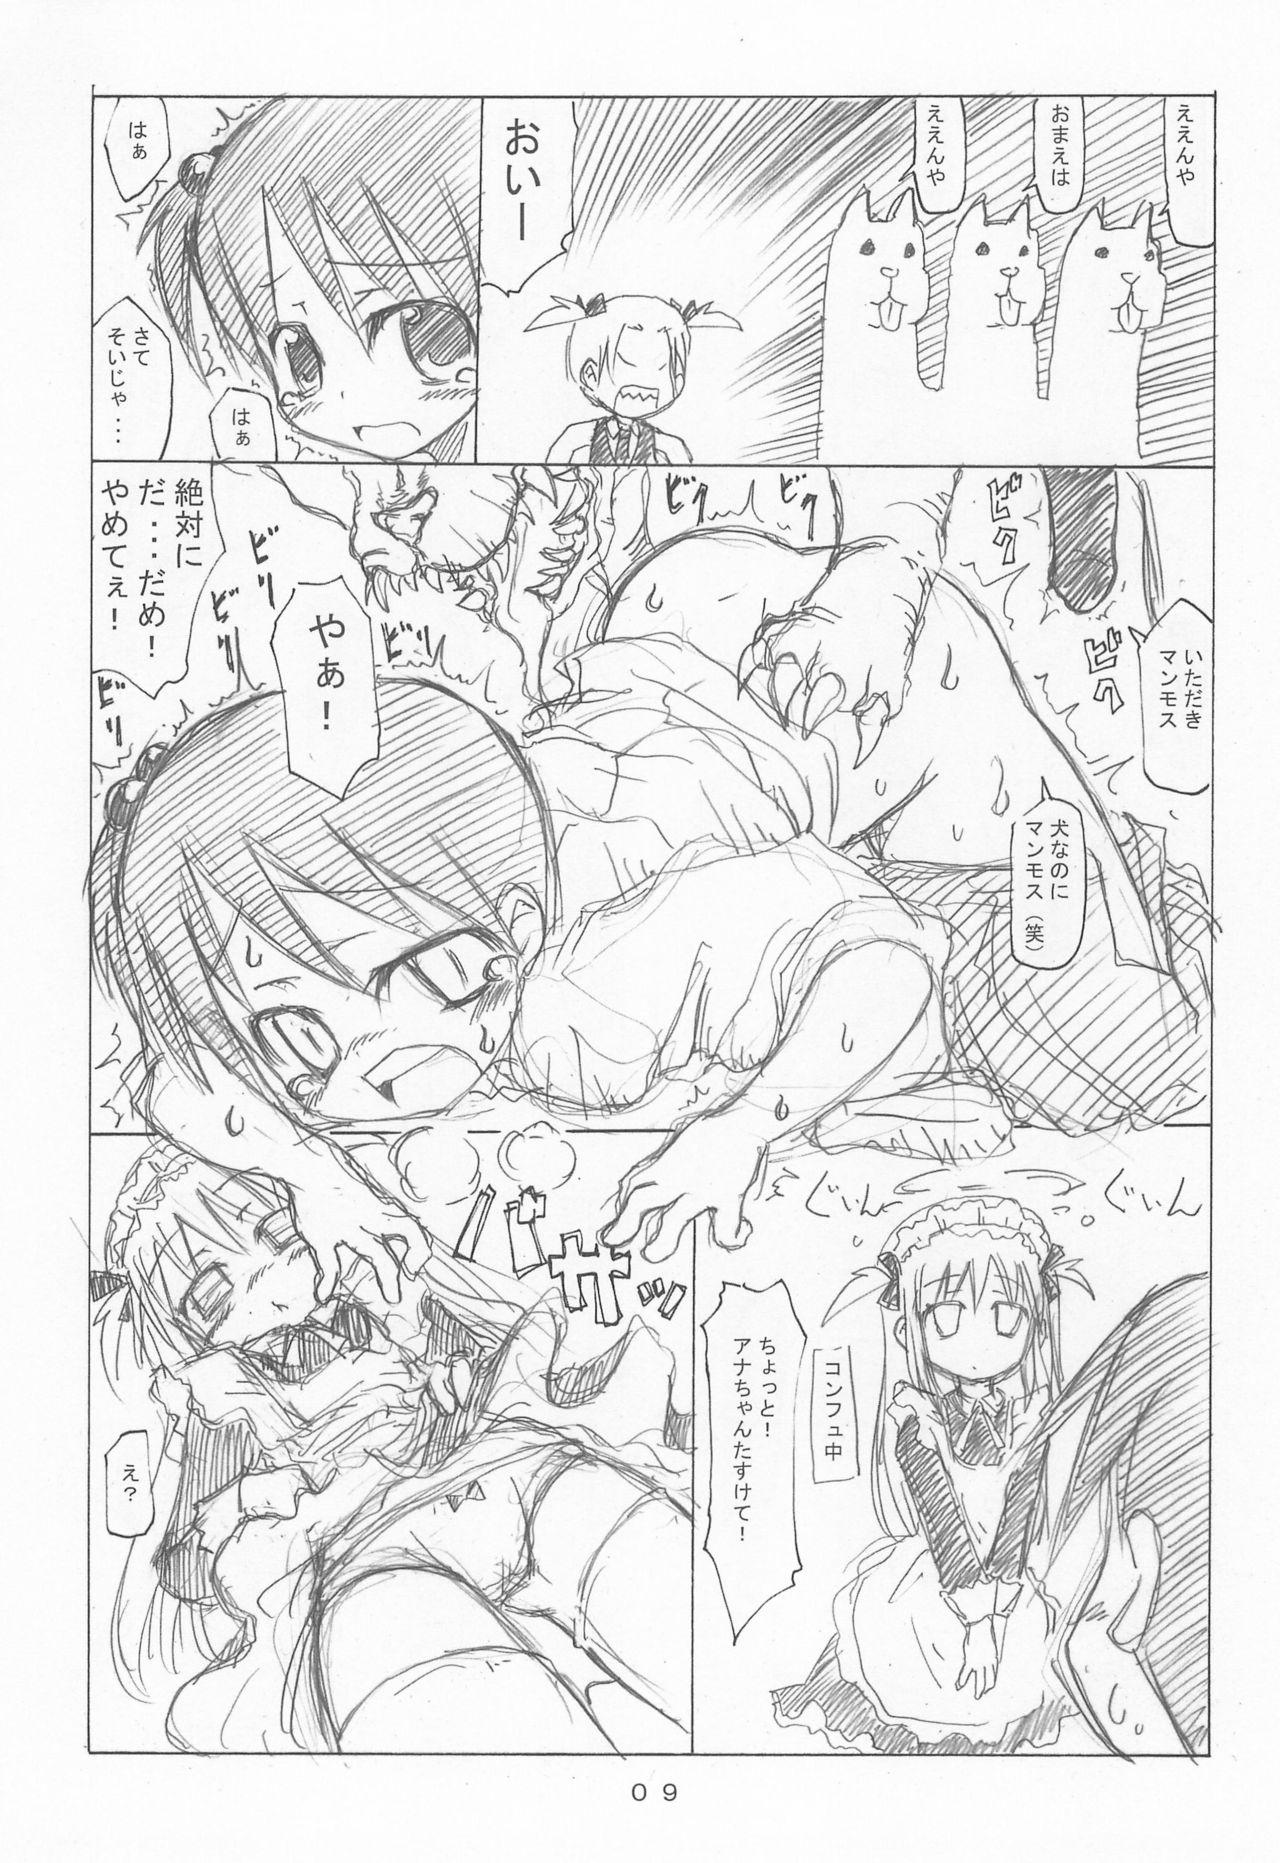 Gayfuck Curaga to Chika-chan to Kerberos Monogatari - Ichigo mashimaro Passionate - Page 9